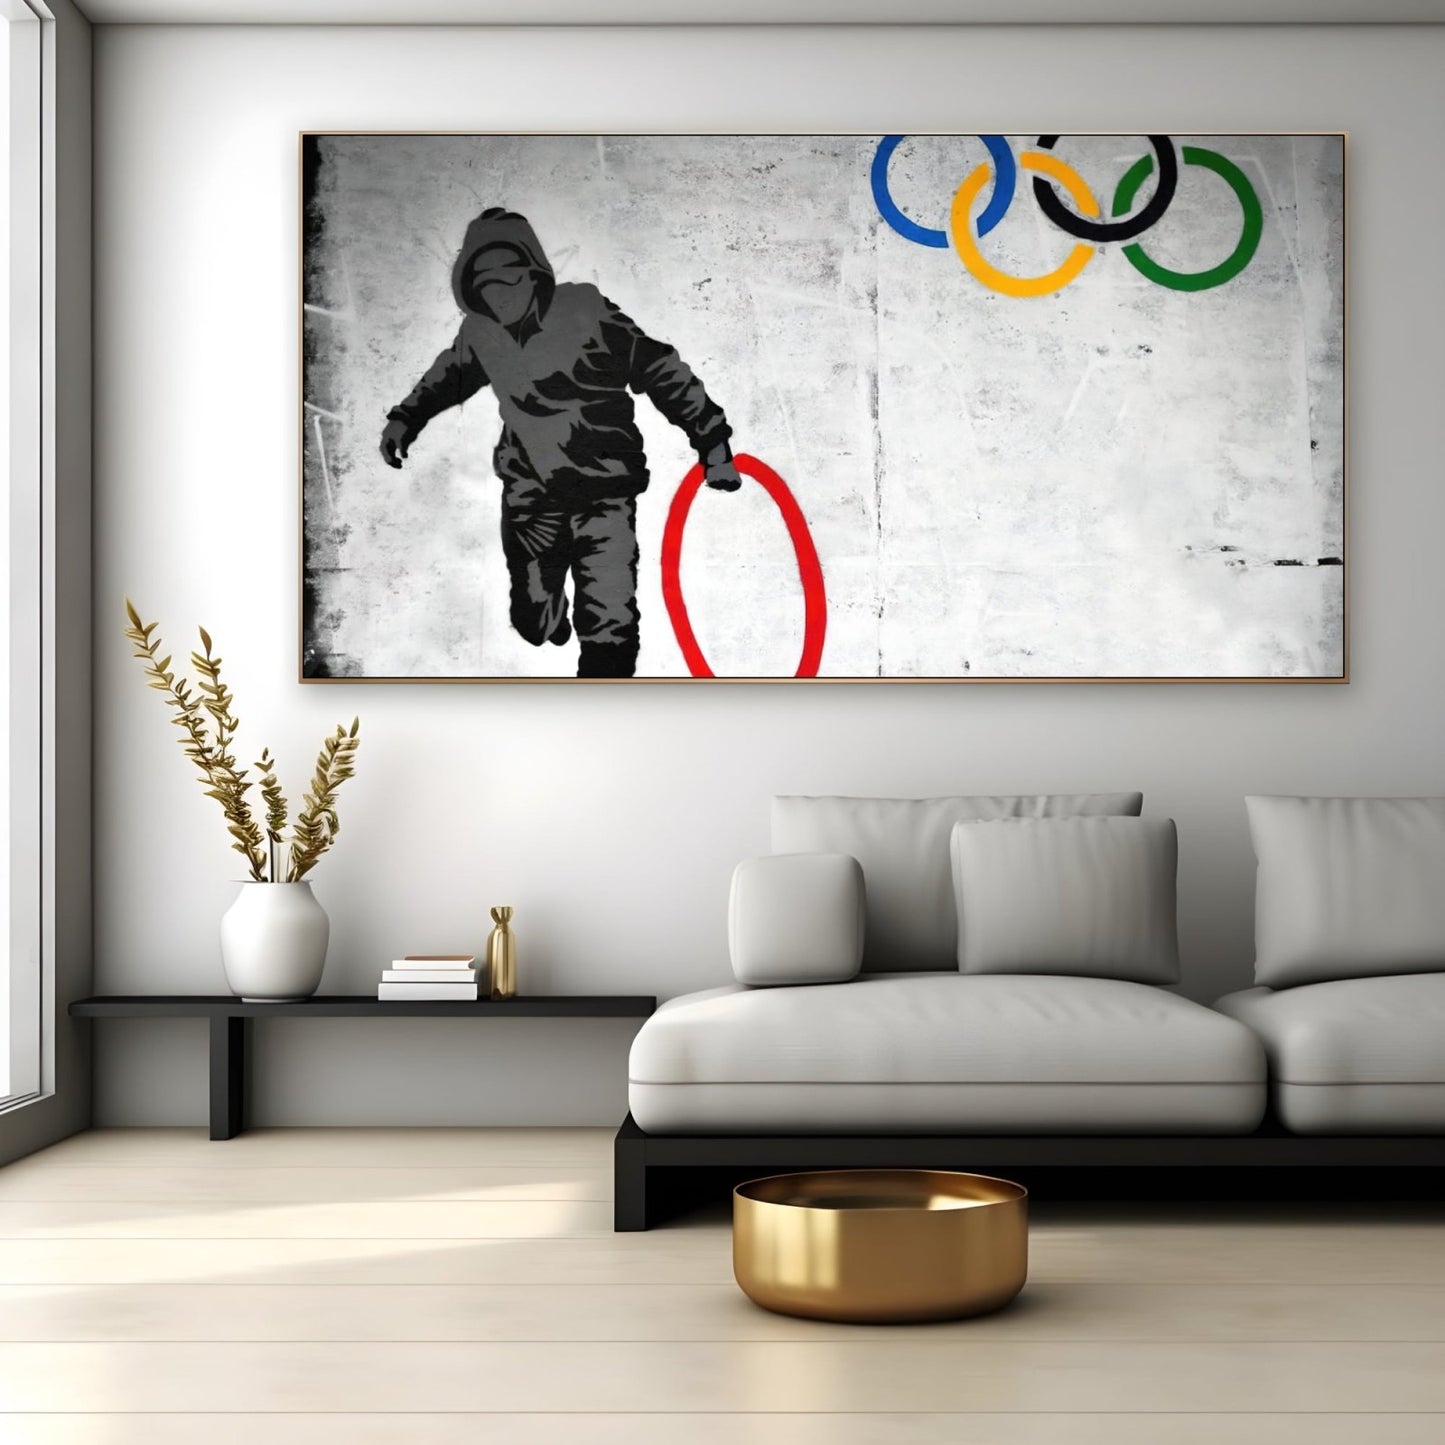 Złodziej kół olimpijskich, Banksy